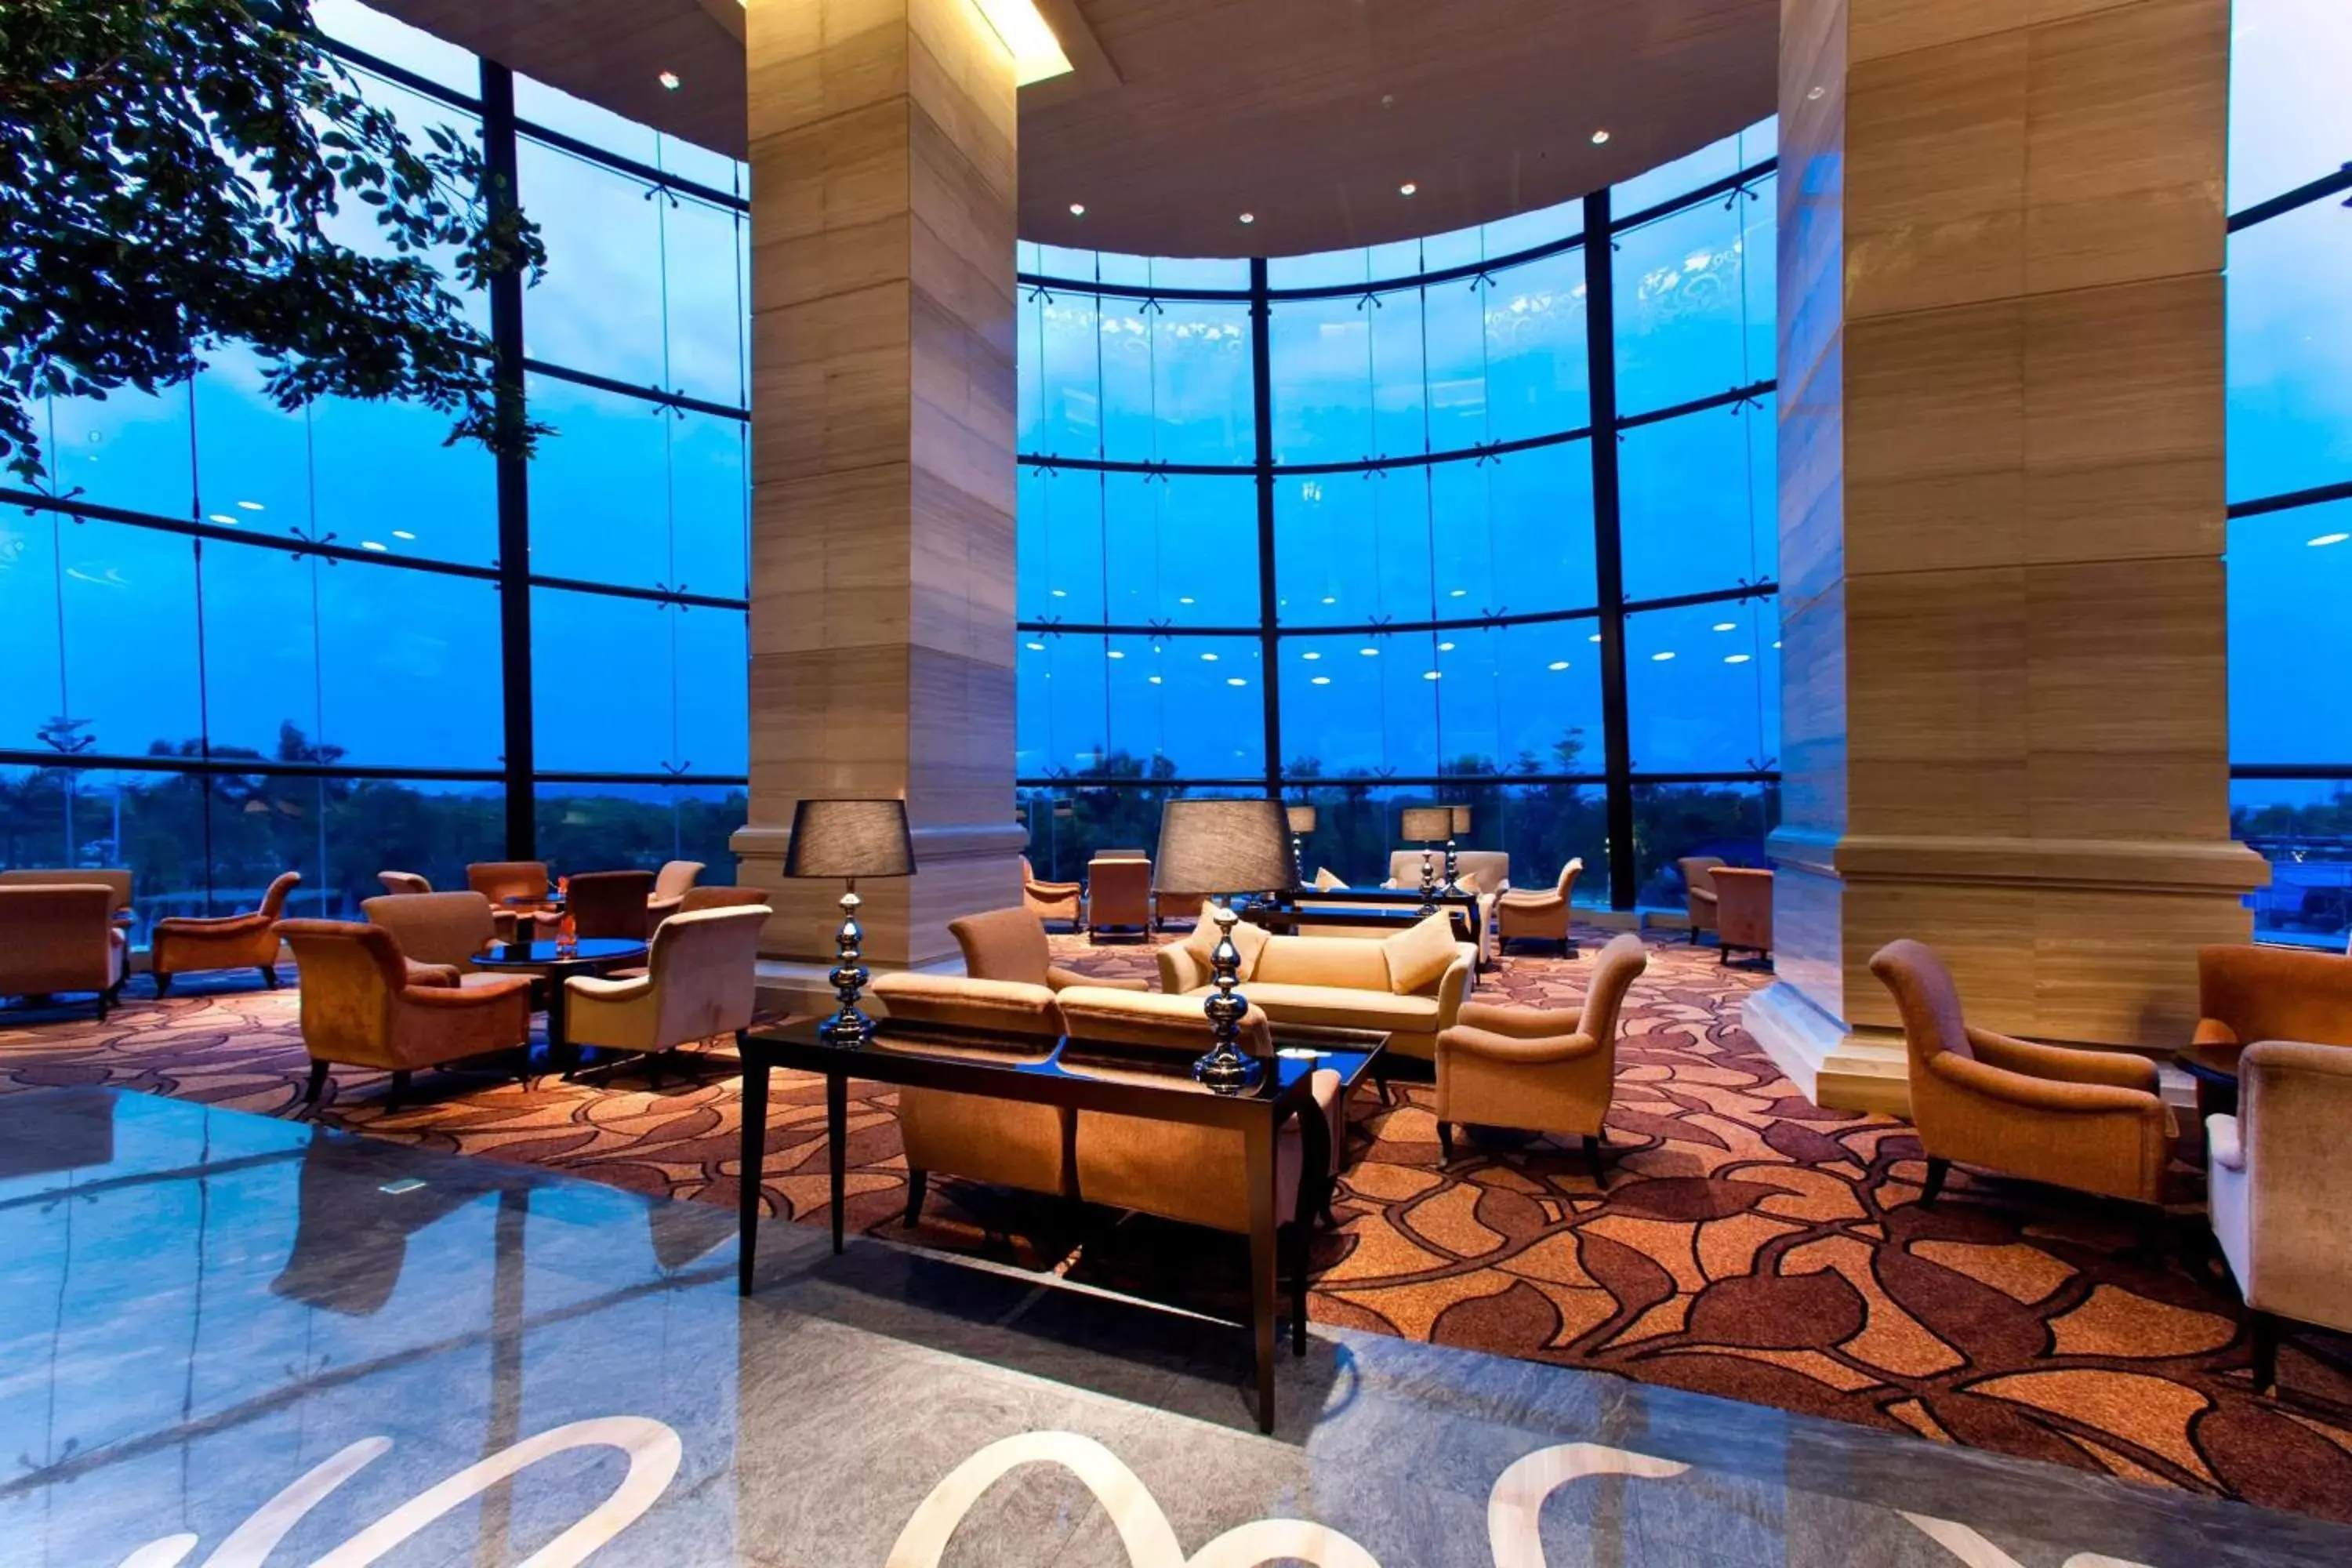 Lobby or reception in Sheraton Shunde Hotel